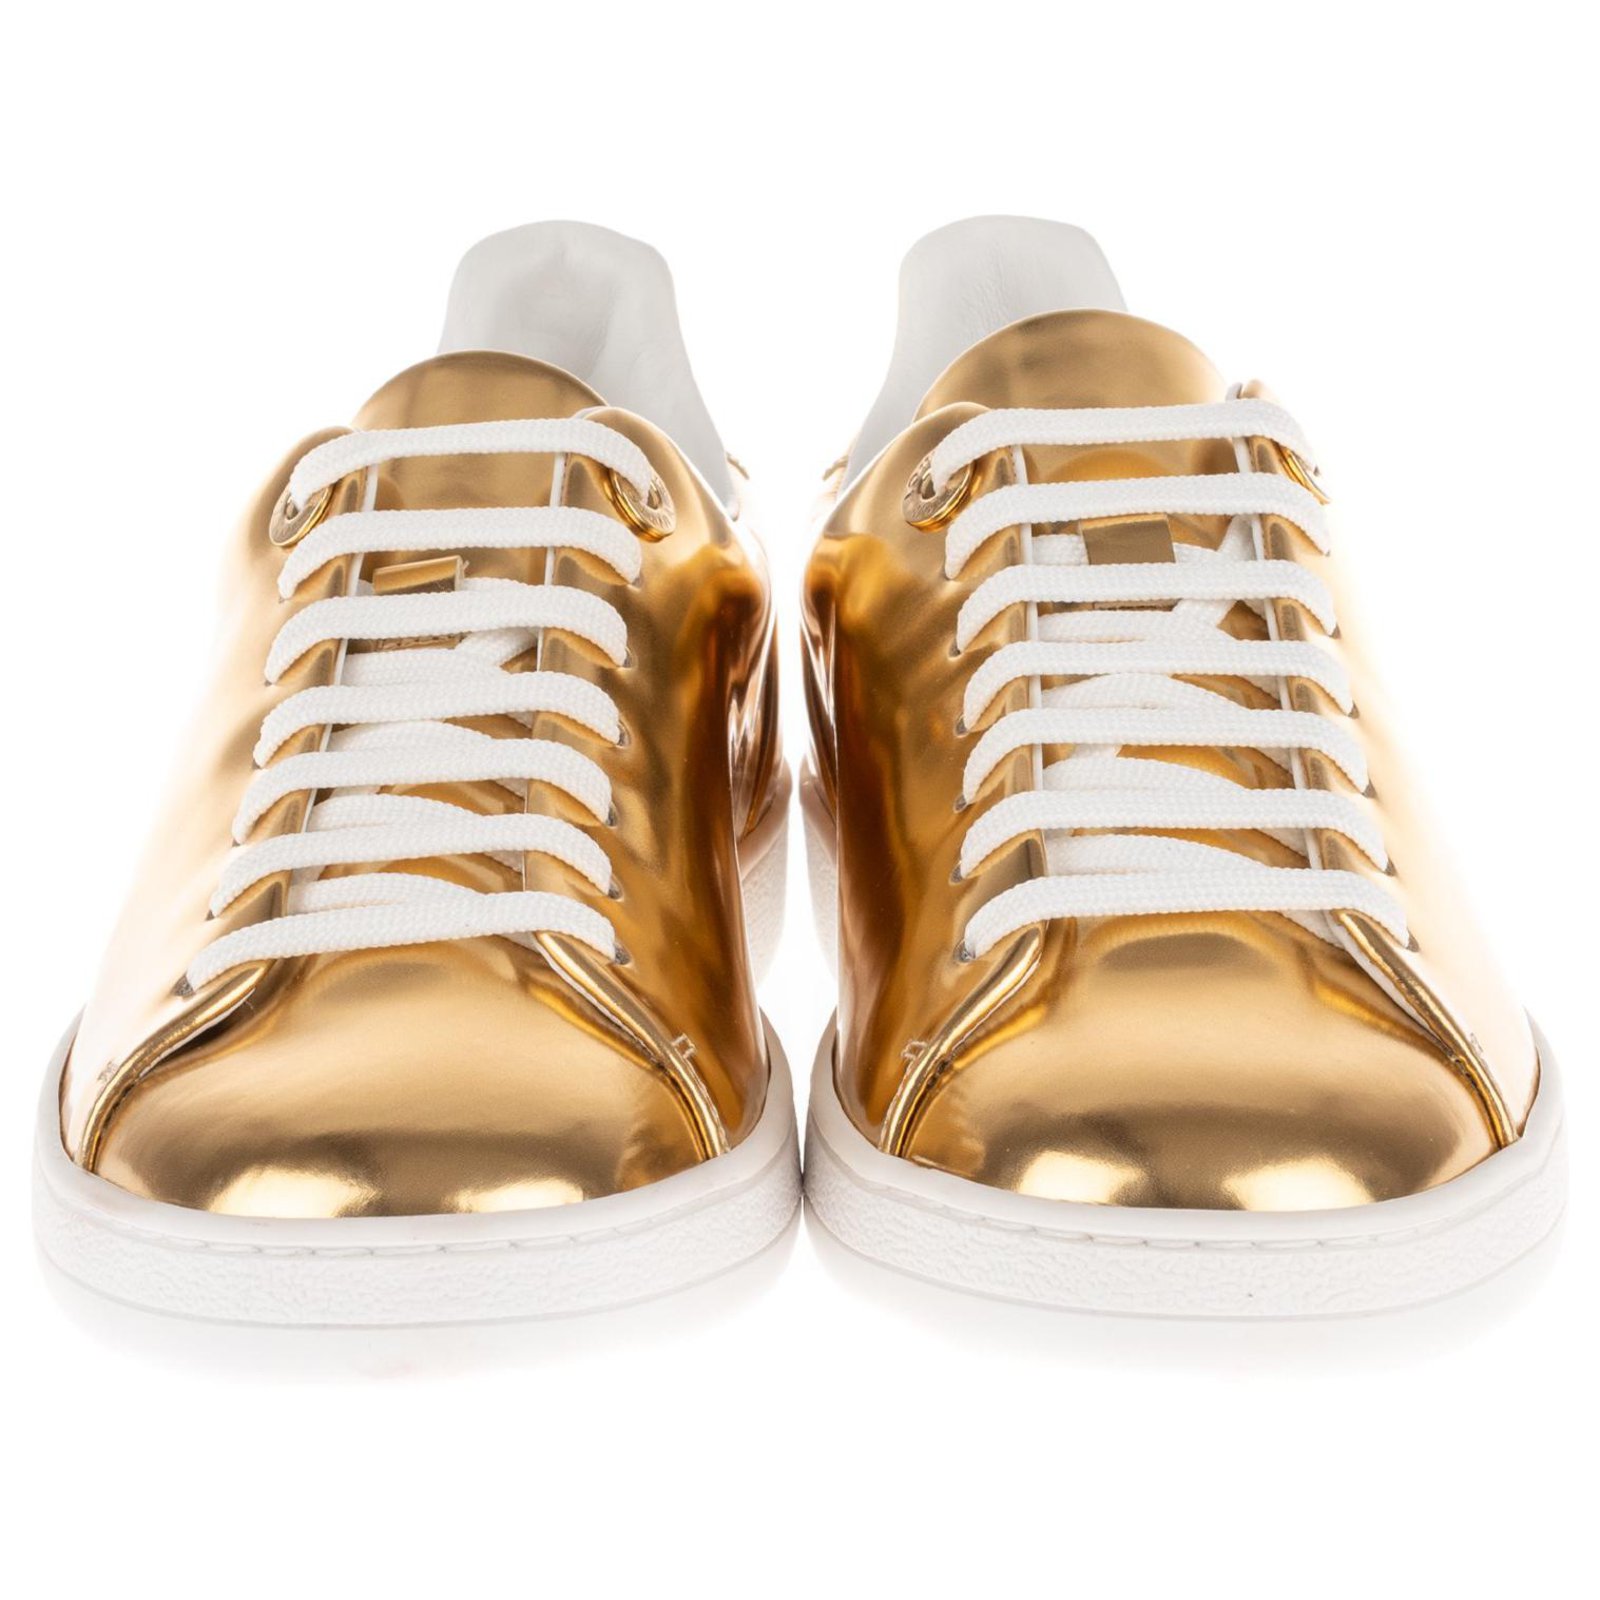 Las mejores ofertas en Zapatos de mujer de oro Louis Vuitton